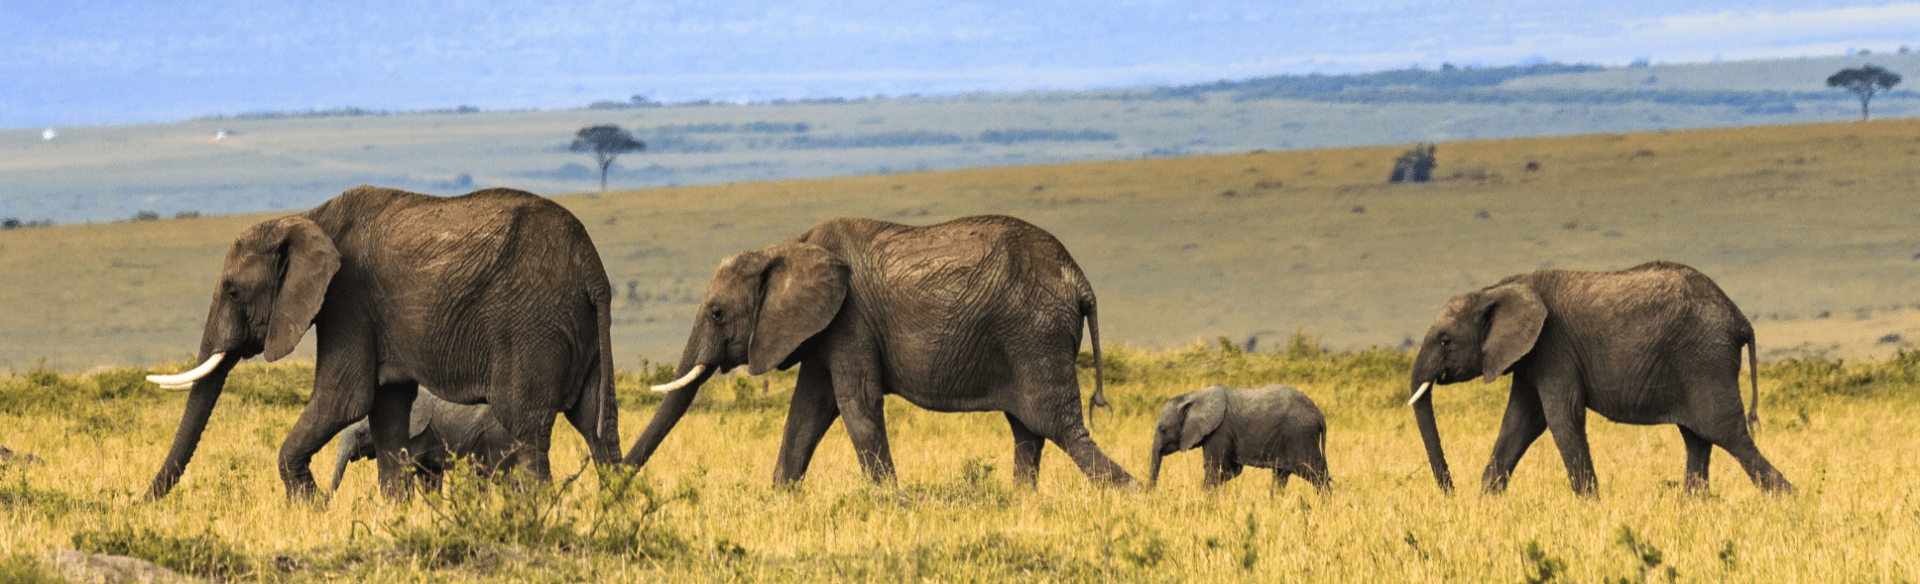 Famille d'éléphants en file indienne